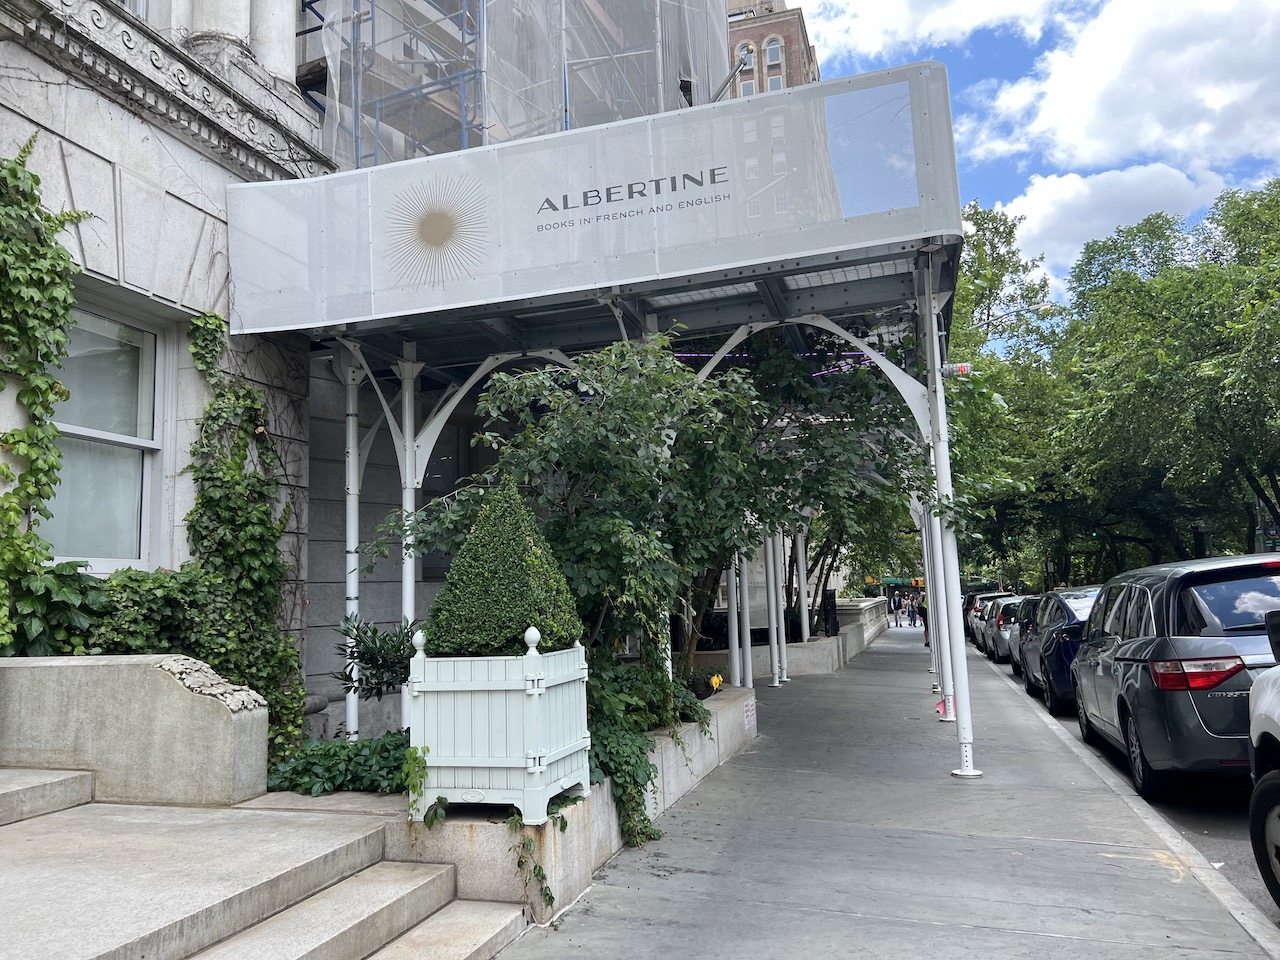 Albertine Bookstore NYC